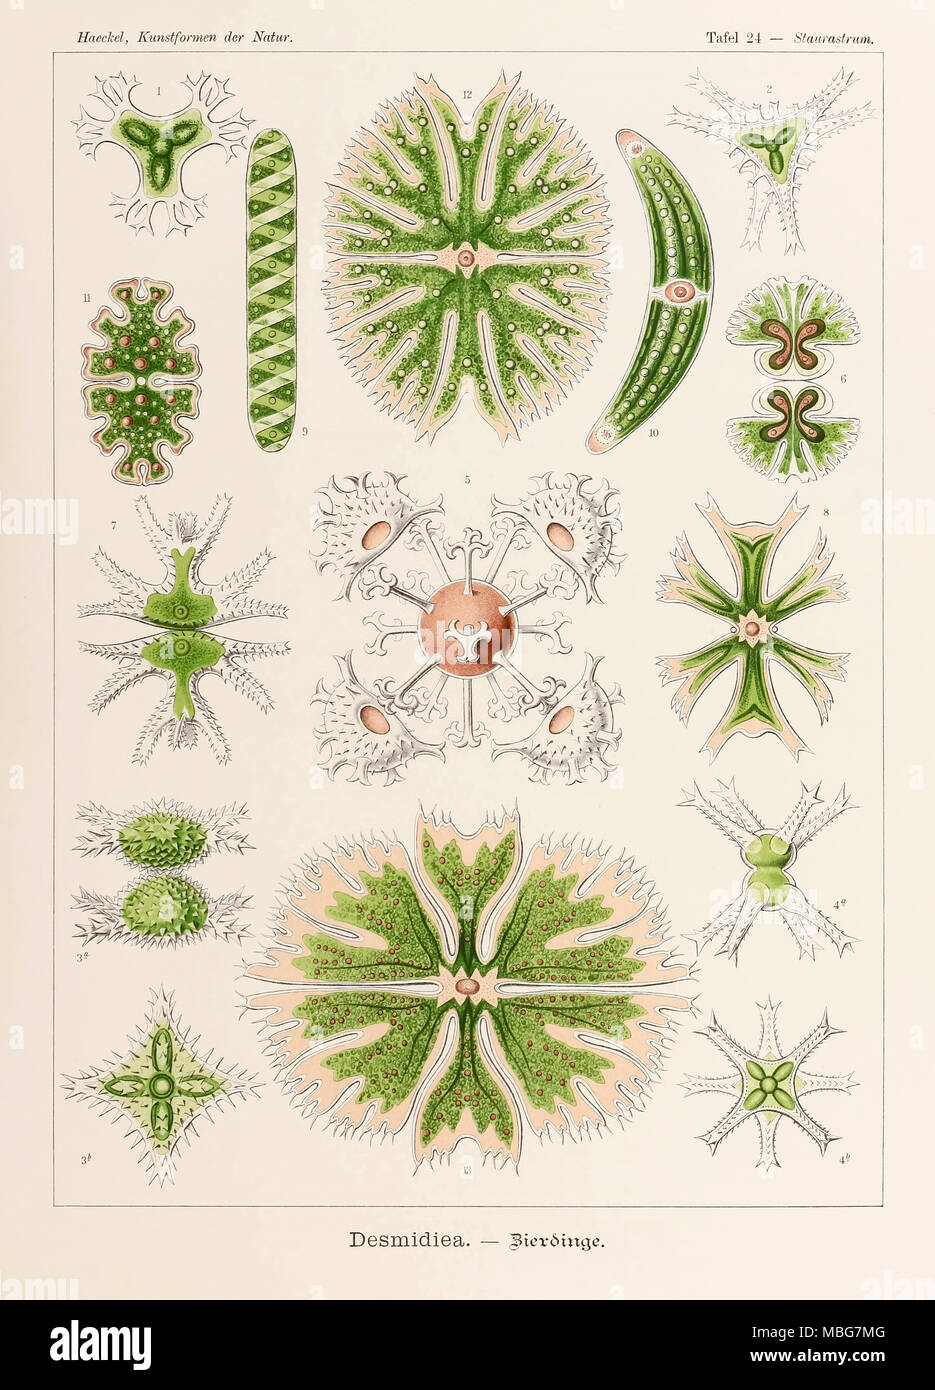 Platte 24 Staurastrum Desmidiea von 'Kunstformen der Natur' (Kunstformen in der Natur), illustriert von Ernst Haeckel (1834-1919). Weitere Informationen finden Sie unten. Stockfoto